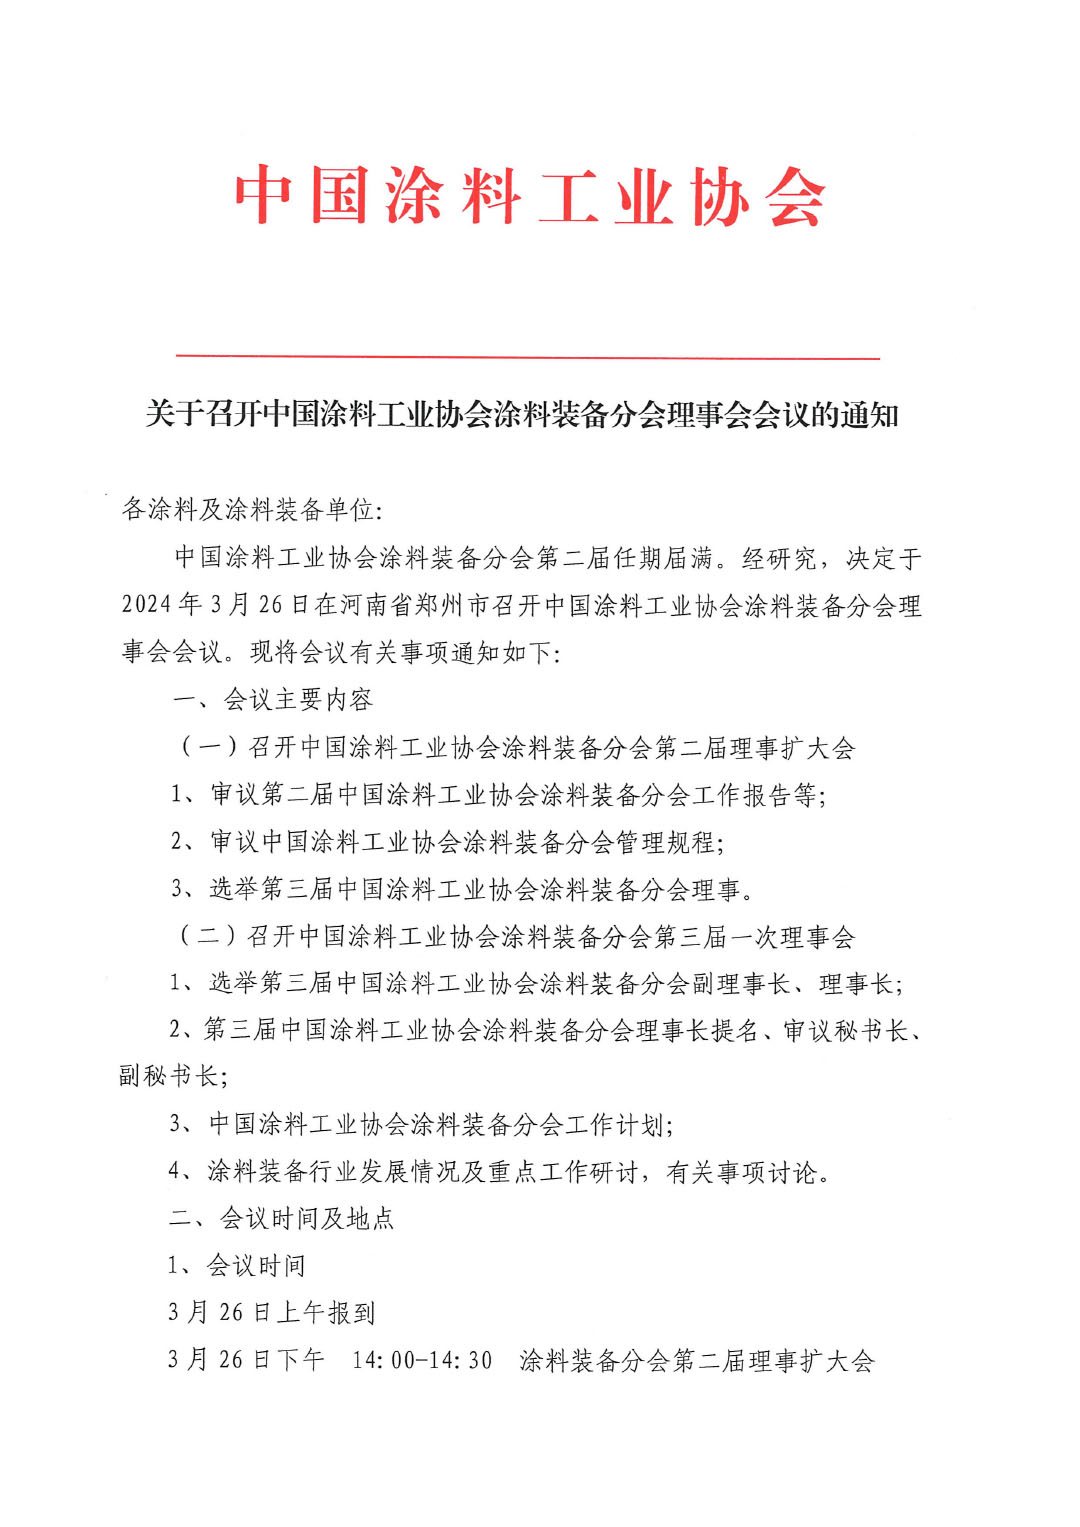 關于召開中國涂料工業協會涂料裝備分會理事會的通知-1